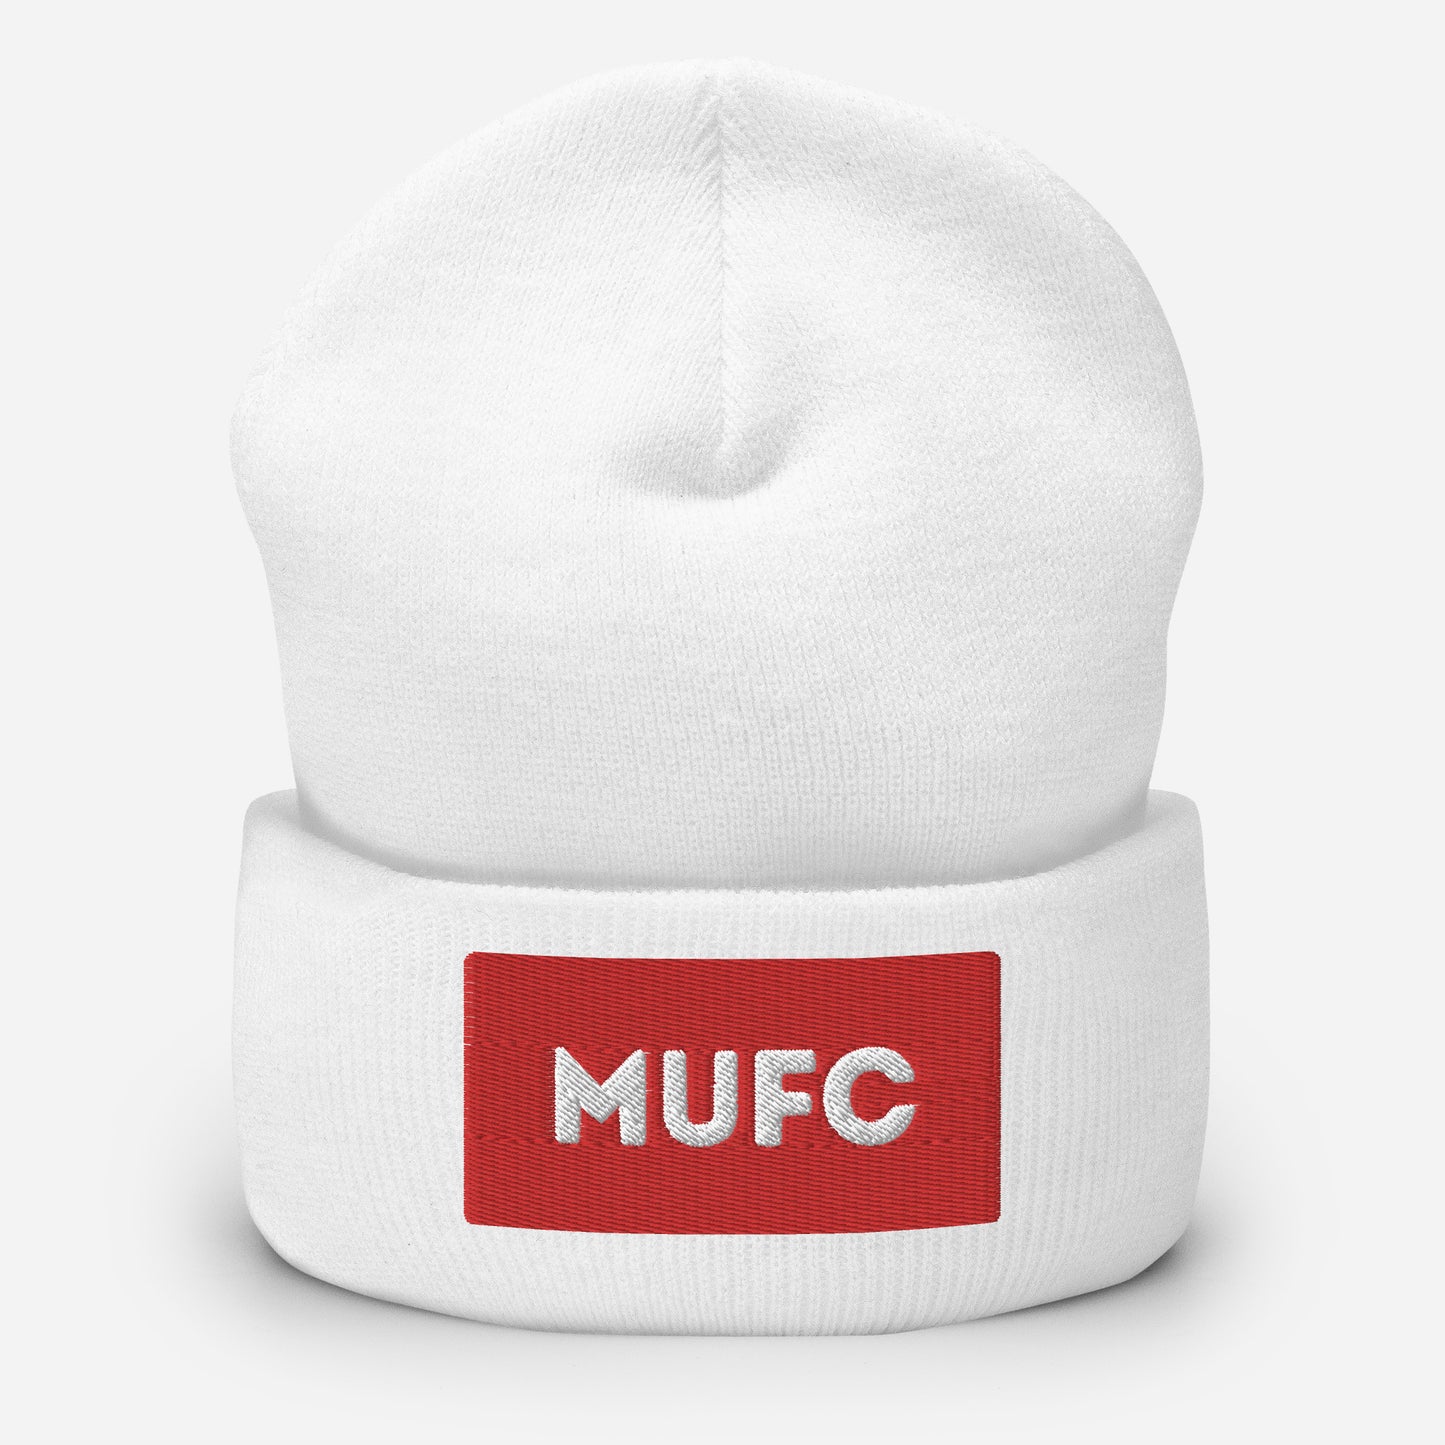 MUFC Cuffed Beanie Hat